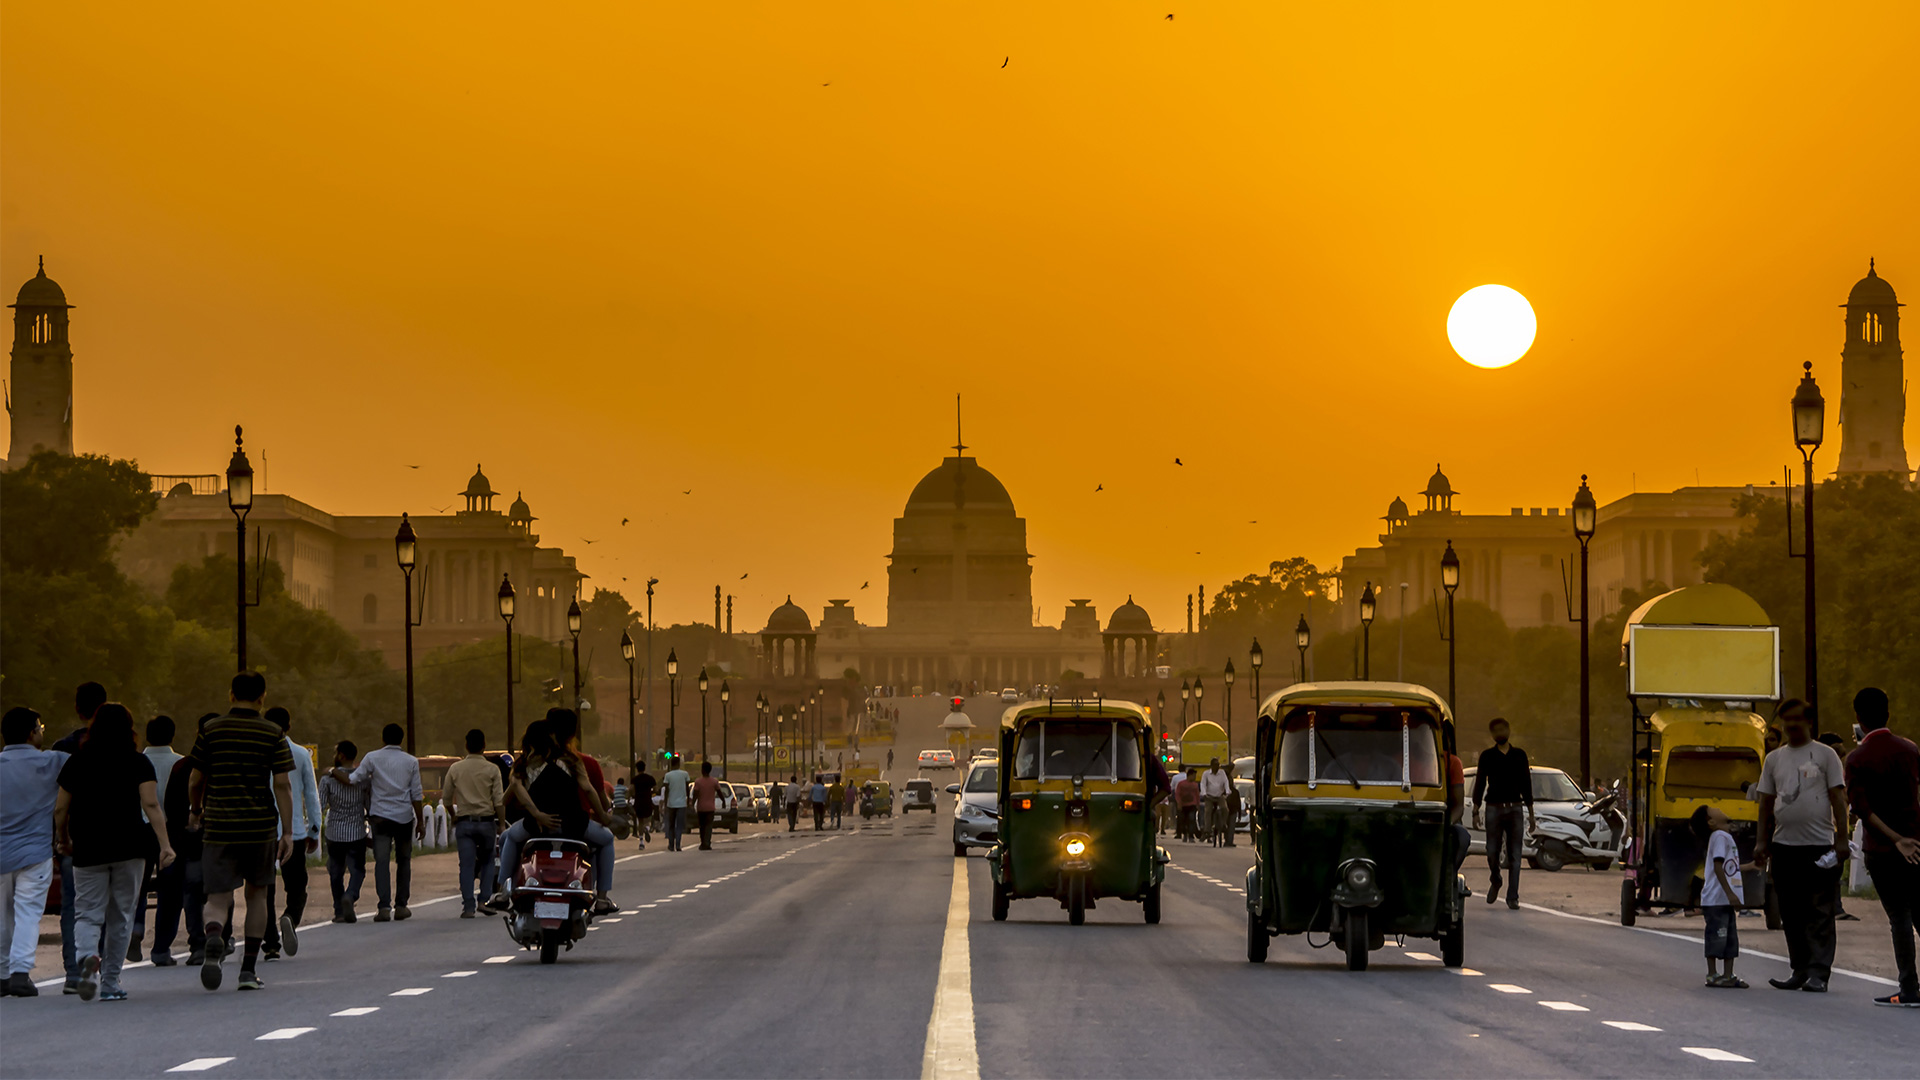 New Delhi - Populous